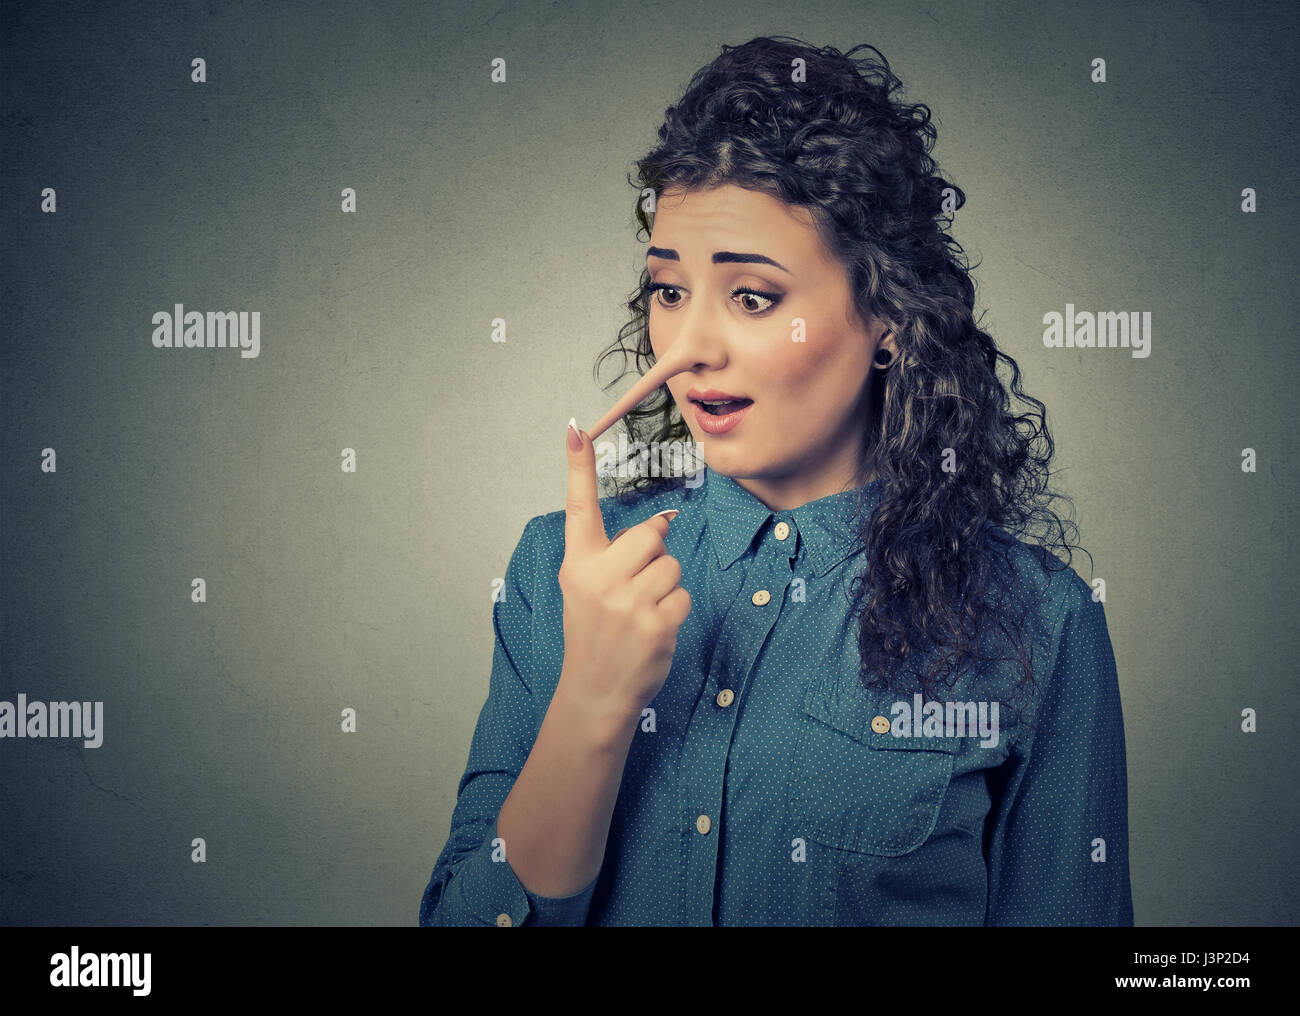 Frau mit langen Nase auf graue Wand Hintergrund isoliert. Lügner-Konzept. Menschlichen Gesichtsausdruck, Emotionen, Gefühle. Stockfoto